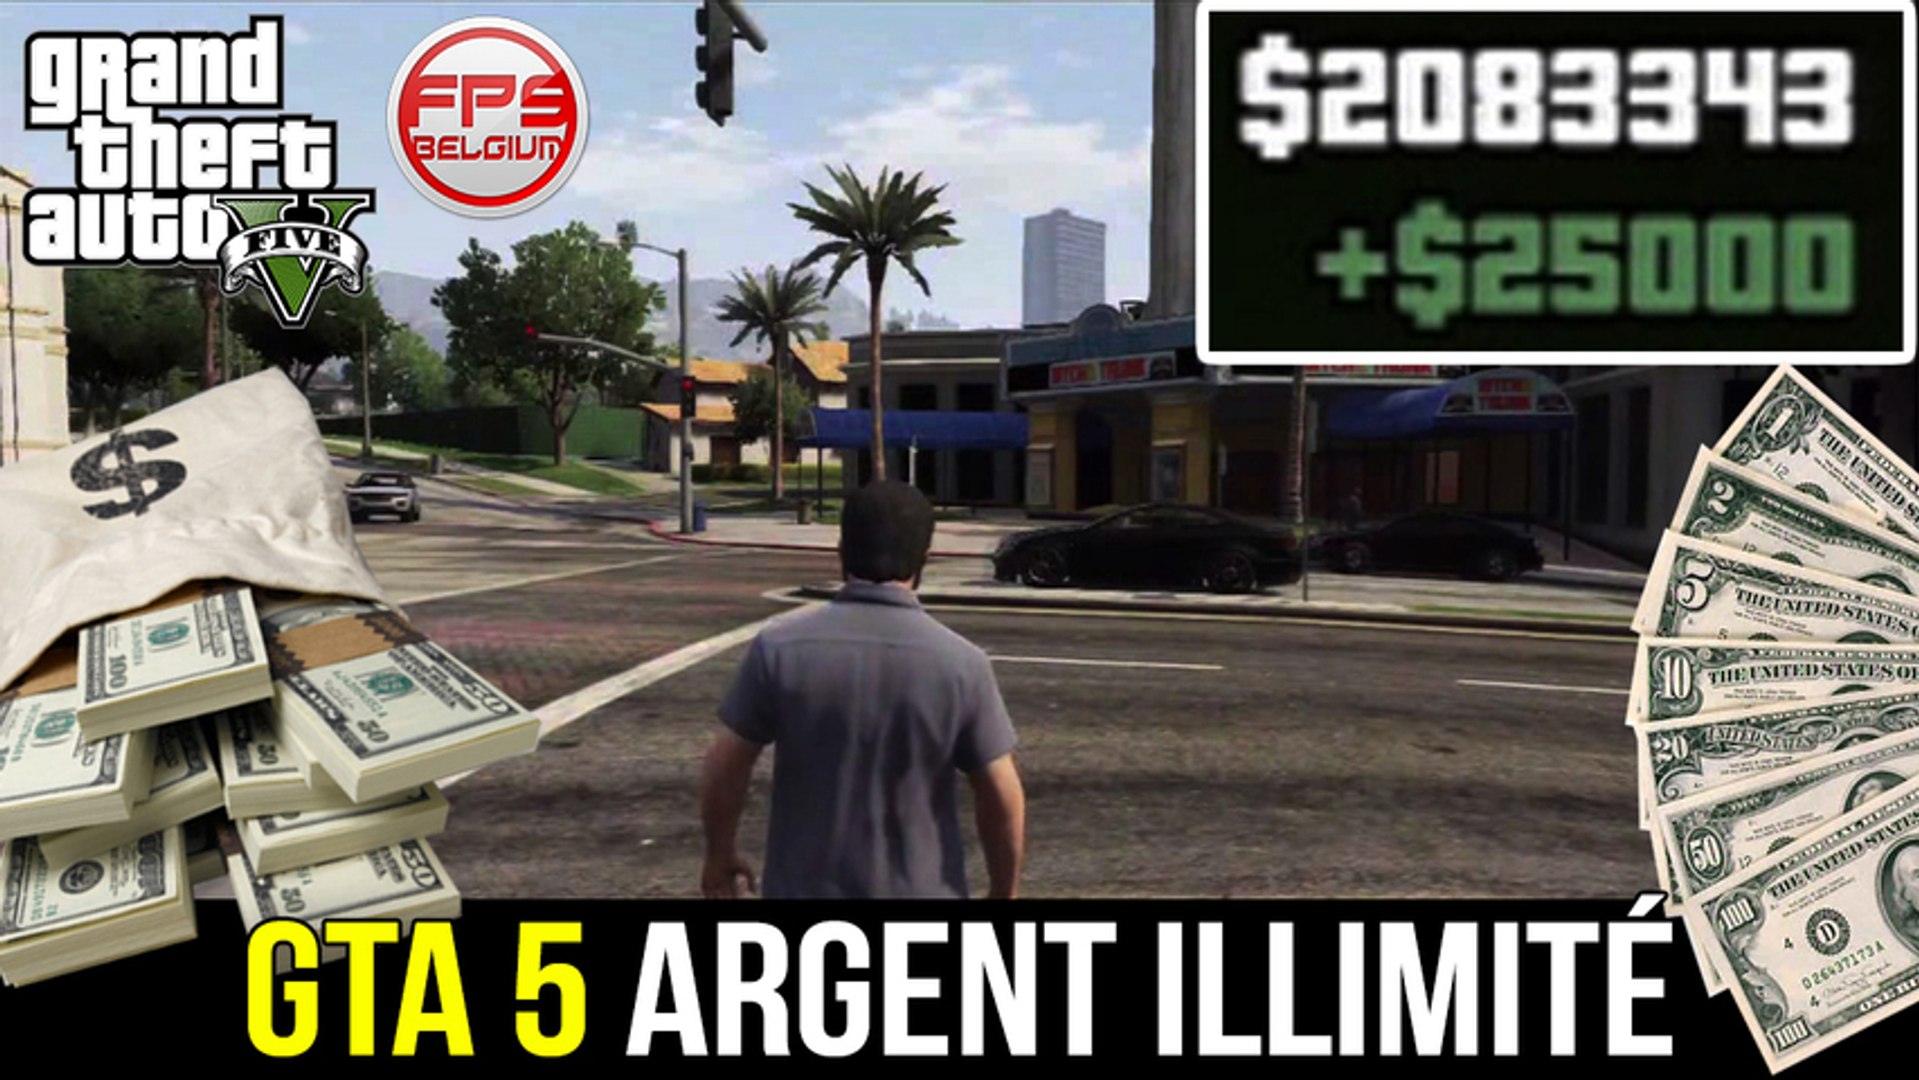 GTA 5 // Avoir de l'ARGENT EN ILLIMITÉ ! (Sans Cheats) - Grand Theft Auto 5  | FPS Belgium - Vidéo Dailymotion